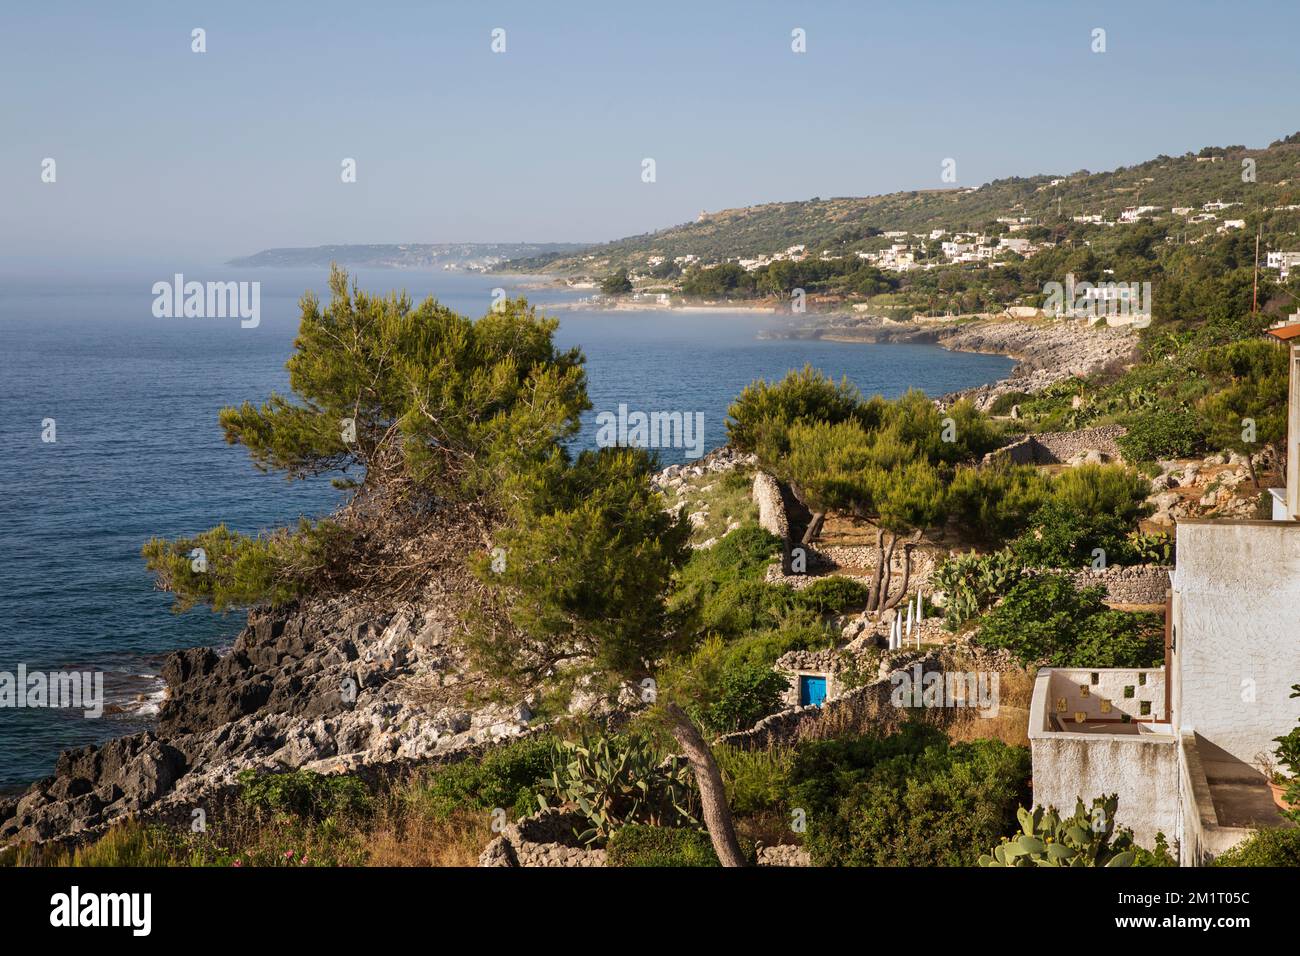 View looking south along rocky Adriatic sea coastline, Marina di Marittima, Castro, Lecce Province, Puglia, Italy, Europe Stock Photo